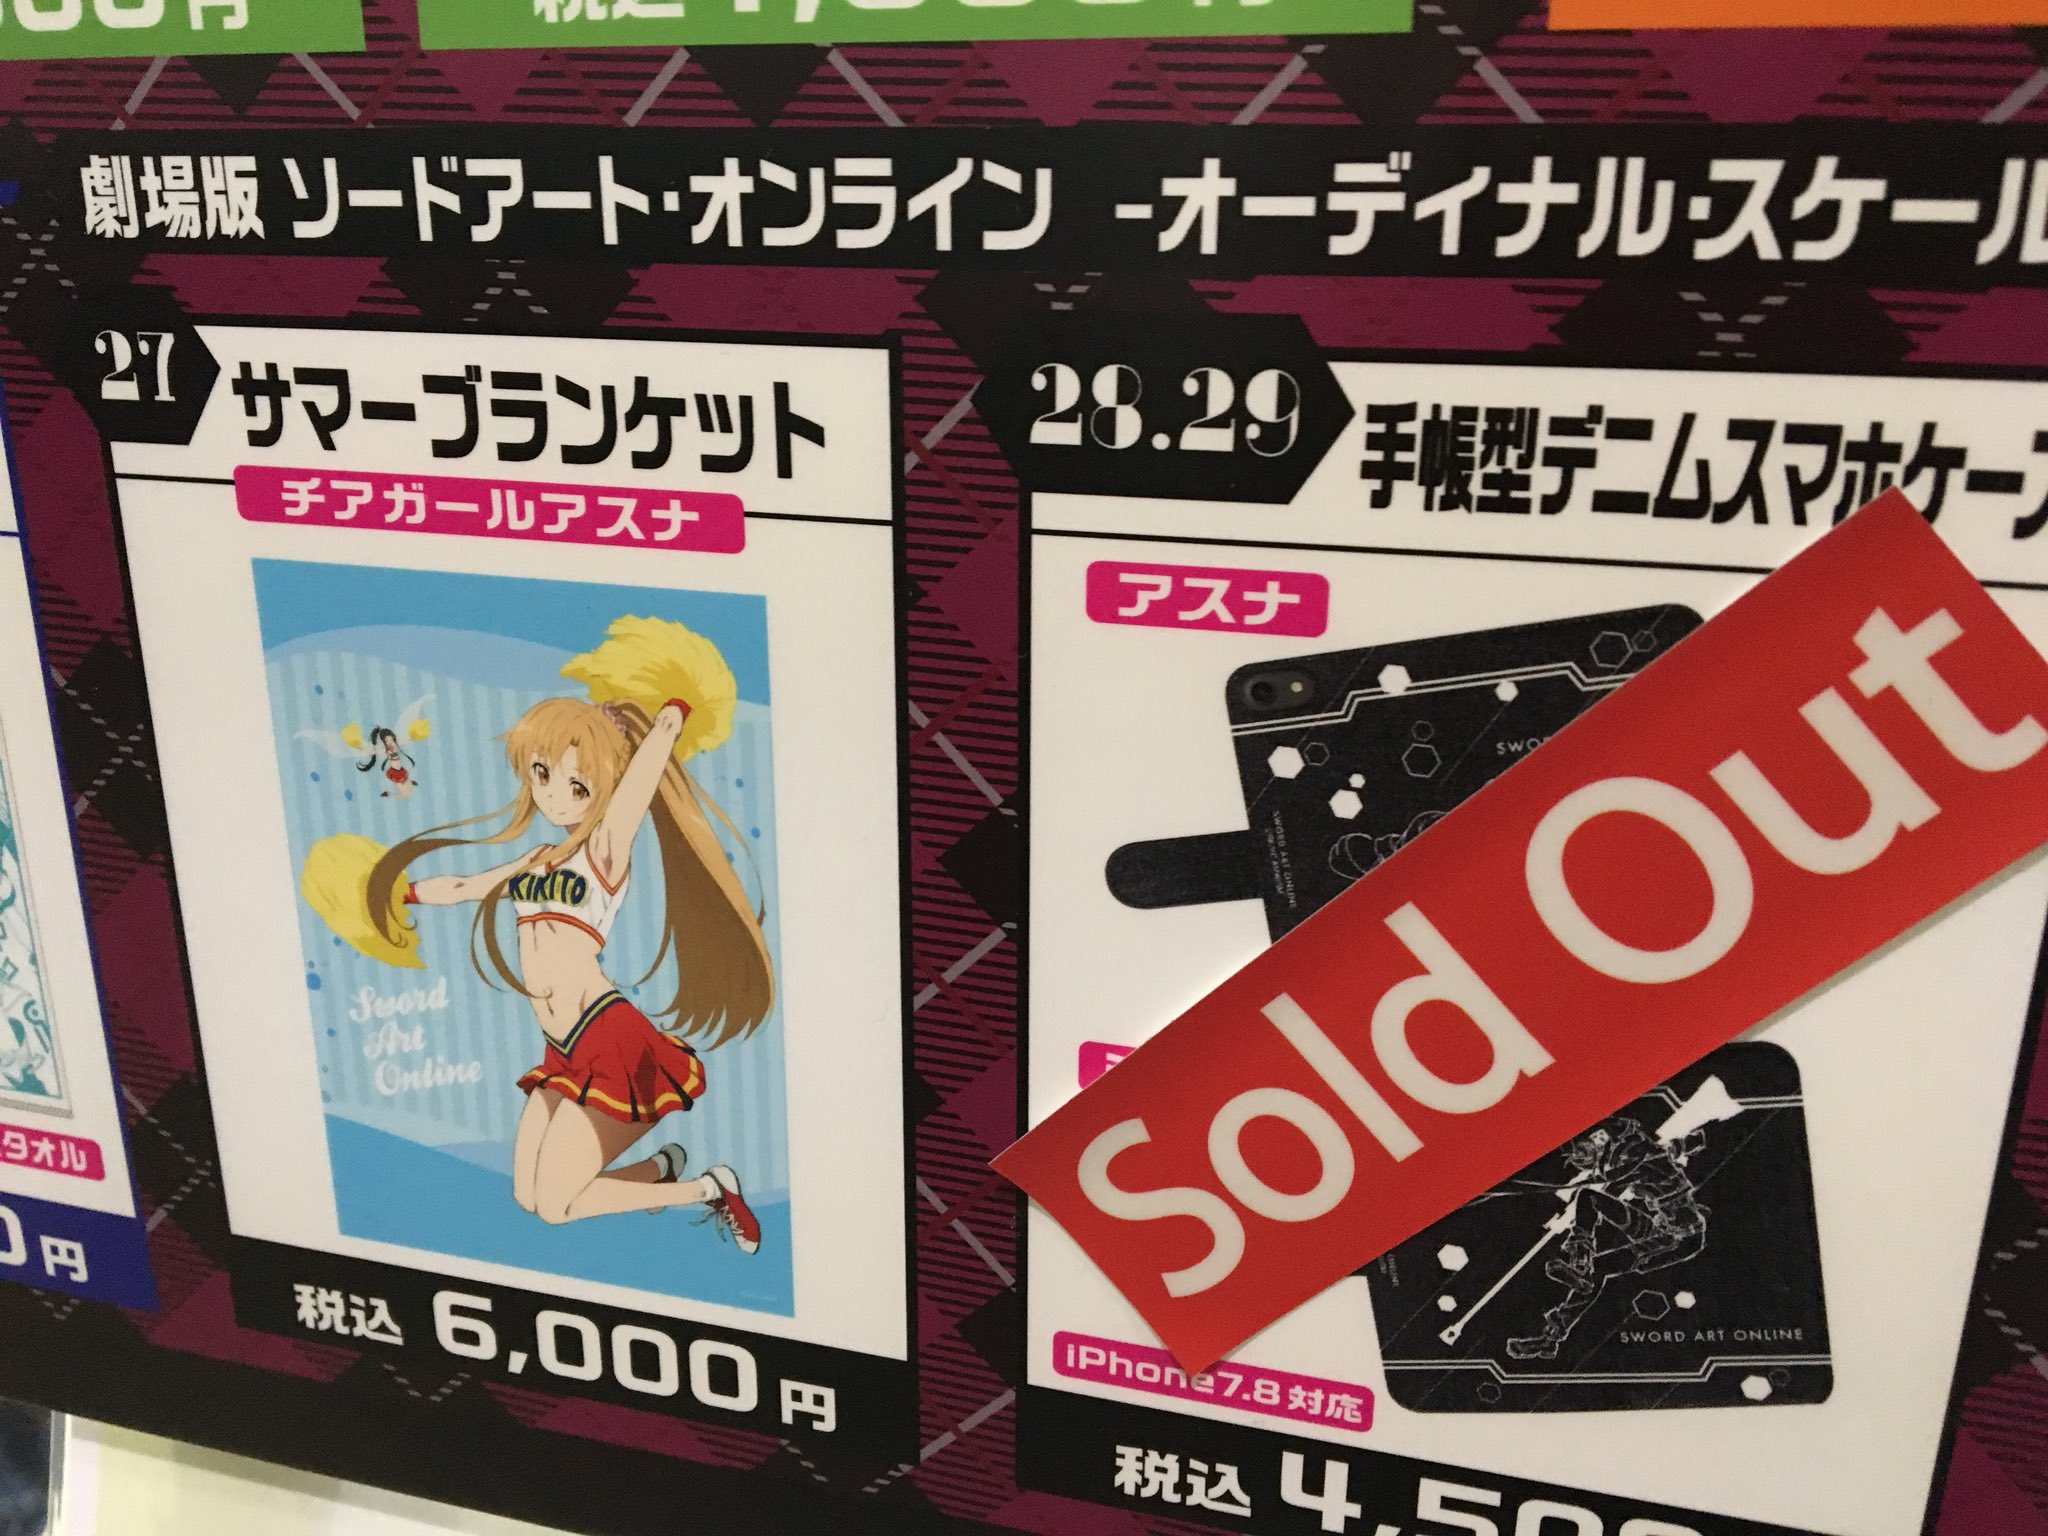 Deleter Manga Starter Kit